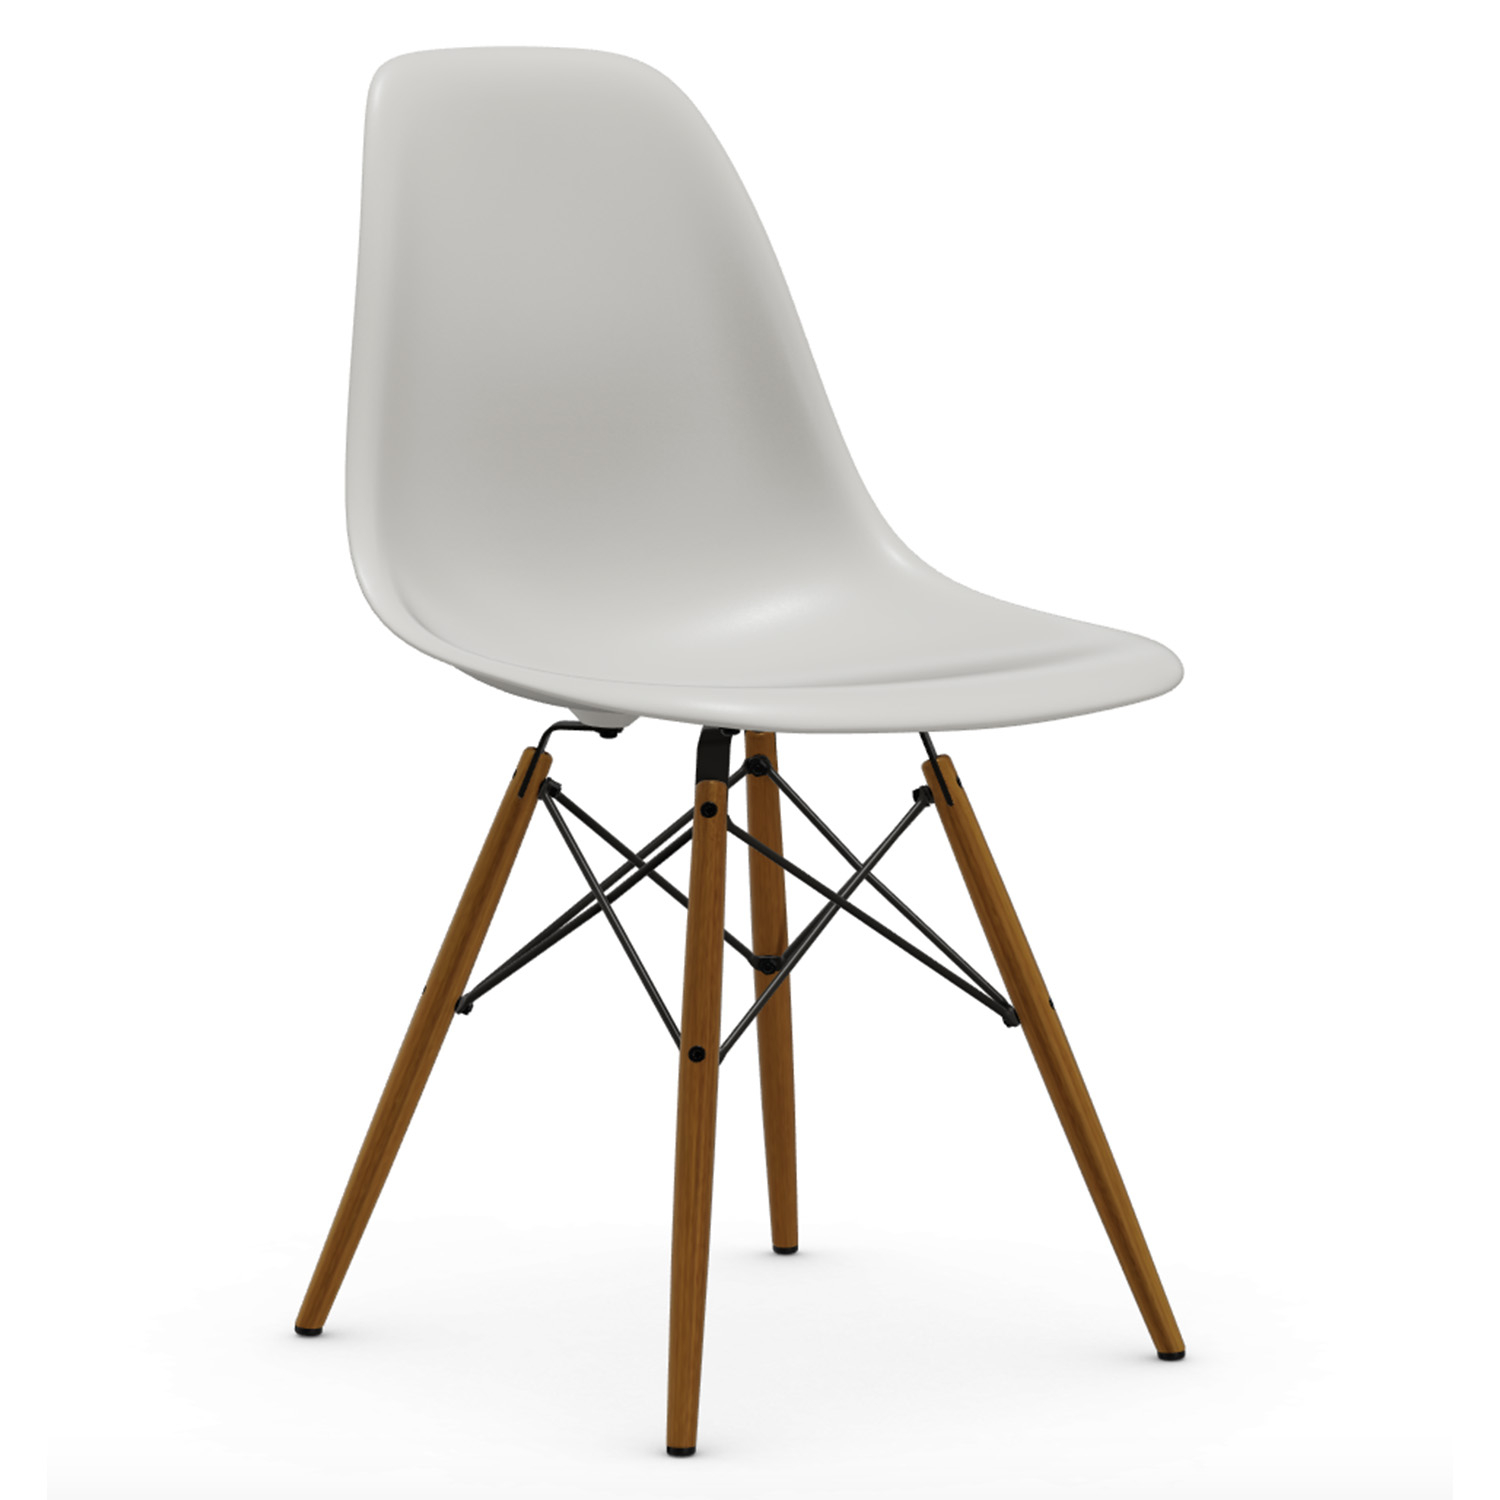 Výprodej Vitra designové židle DSW-skořepina bílá, podnož jasan přírodní